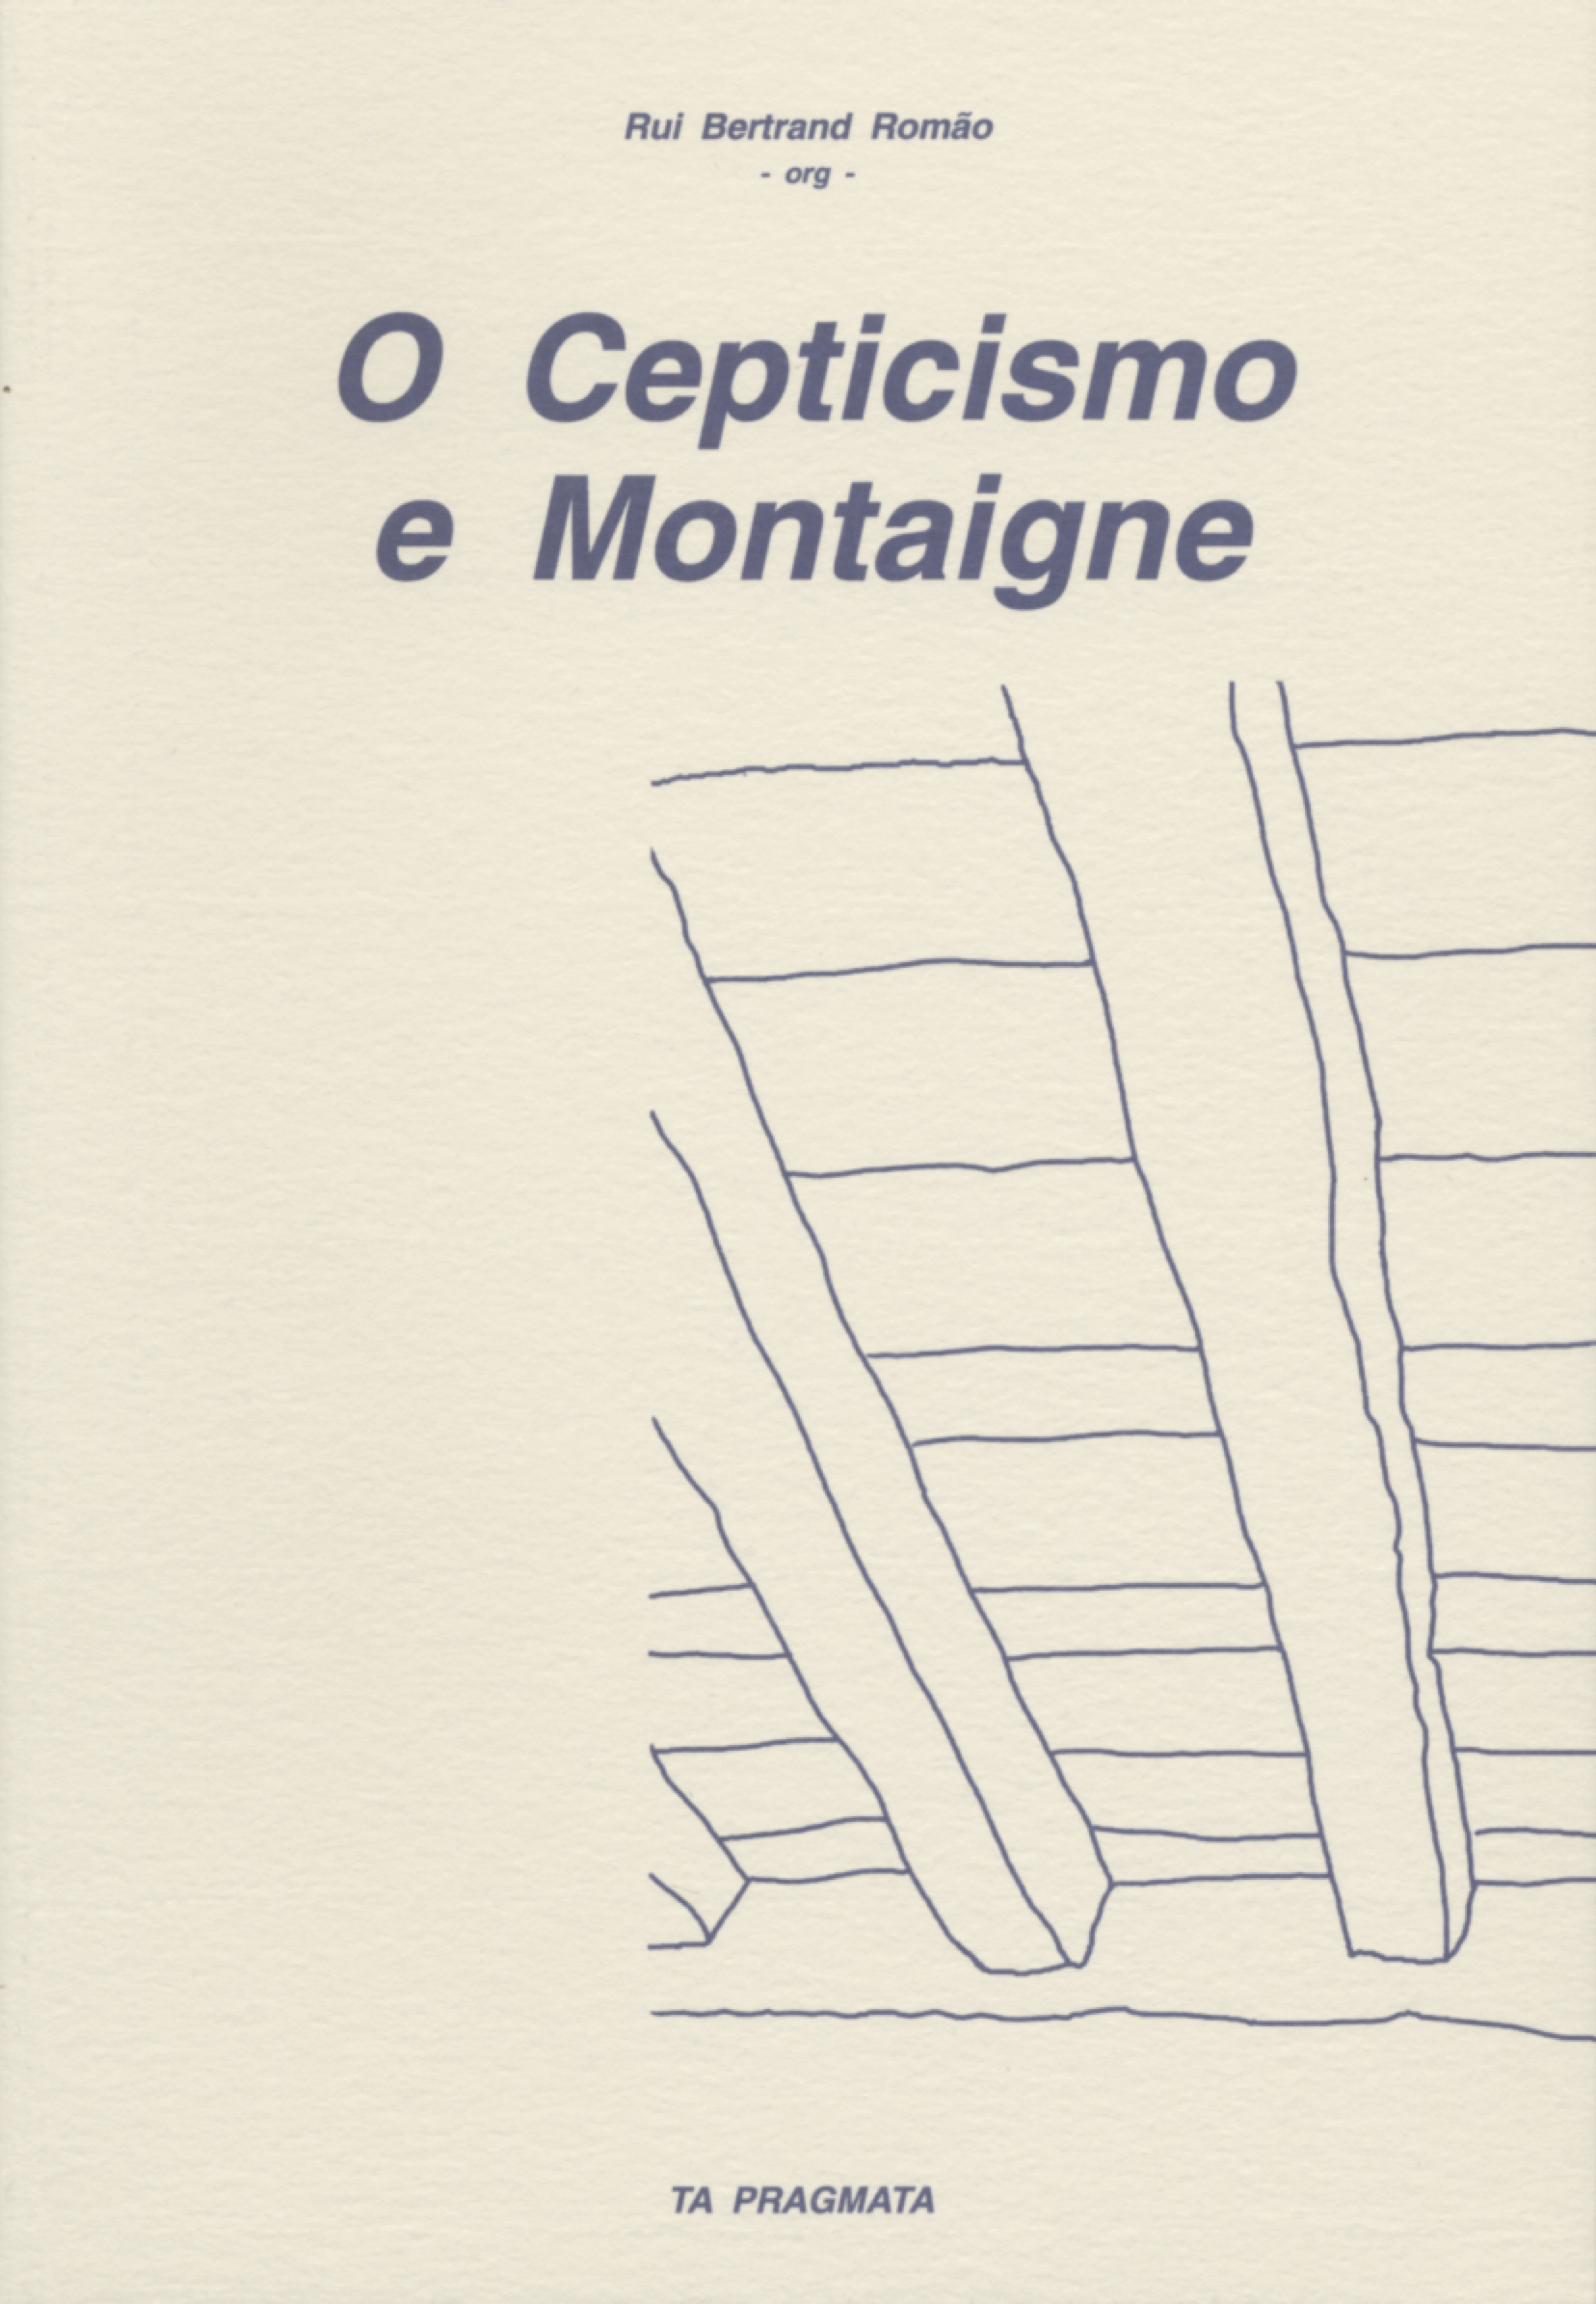 Capa: Rui Bertrand Romão (2003) O Cepticismo e Montaigne. Communication  +  Philosophy  +  Humanities. .